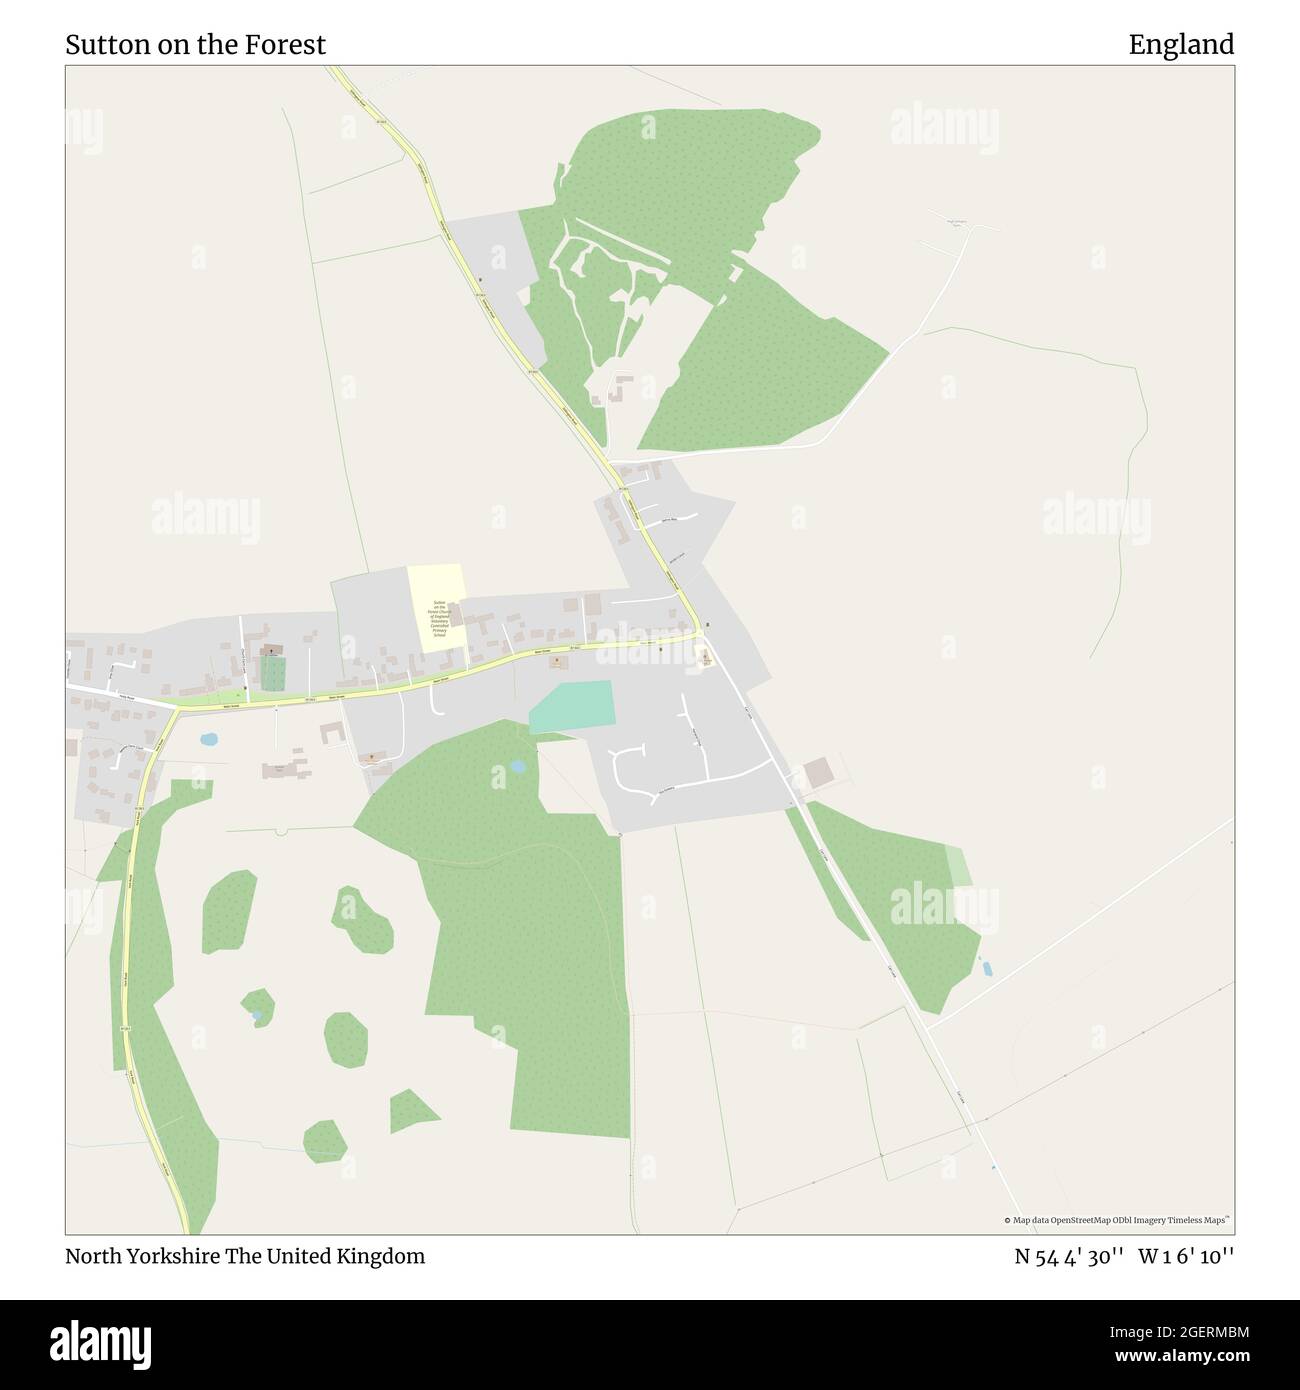 Sutton On The Forest North Yorkshire Grossbritannien England N 54 4 30 W 1 6 10 Map Timeless Map Veroffentlicht Im Jahr 21 Reisende Entdecker Und Abenteurer Wie Florence Nightingale David Livingstone